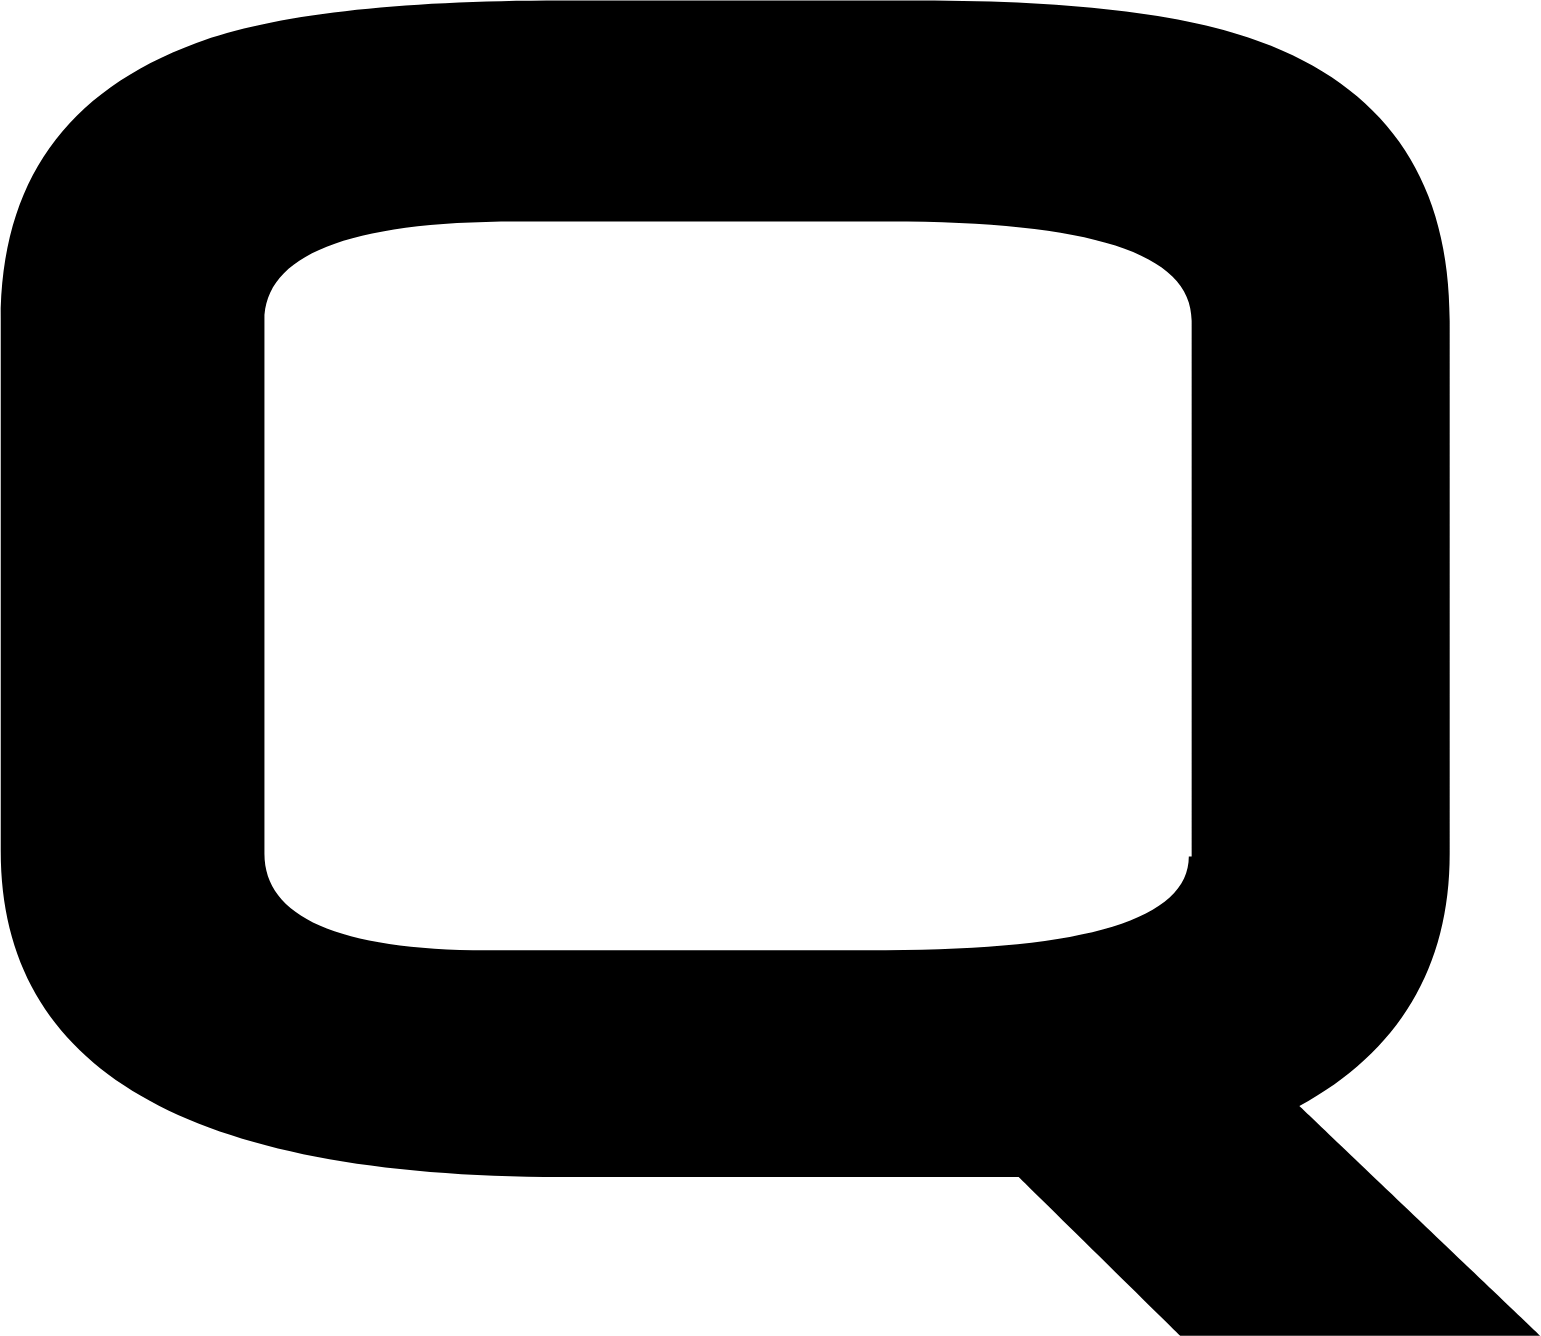 Quicklogic logo (PNG transparent)